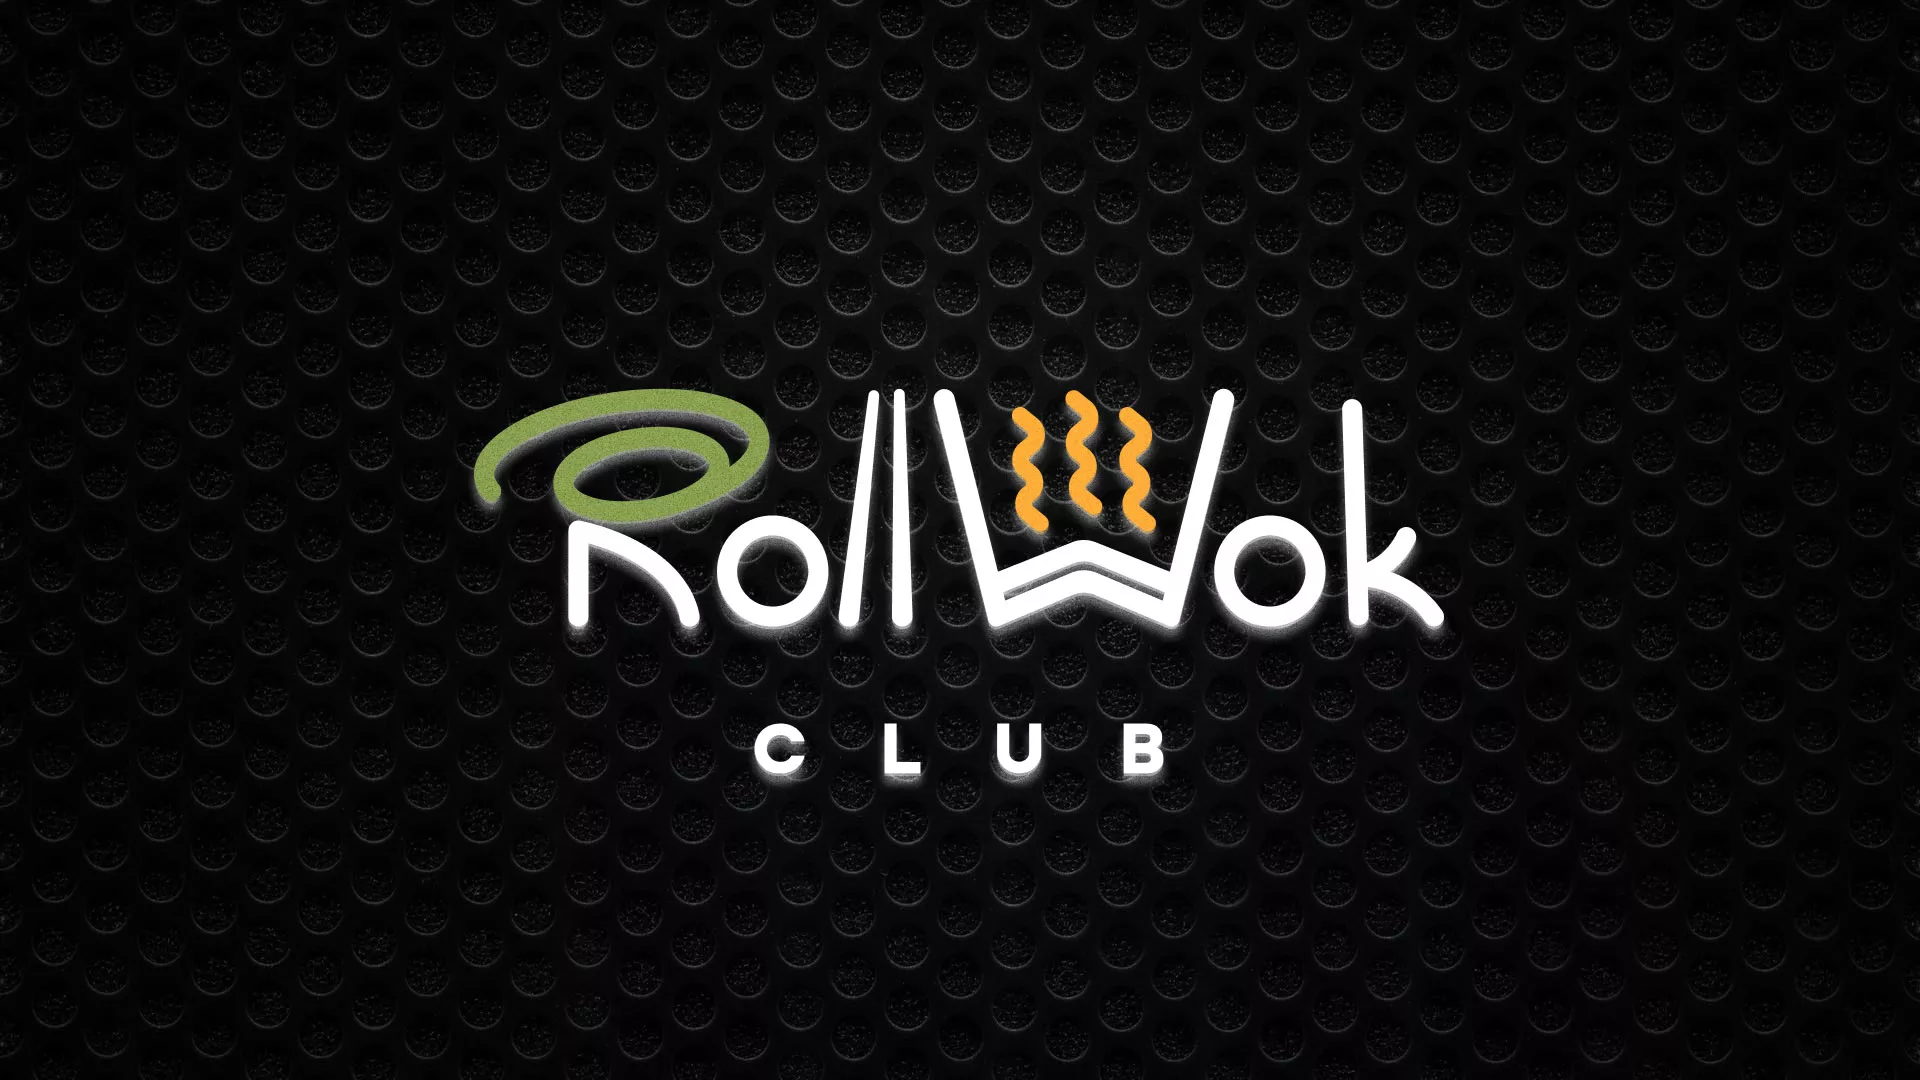 Брендирование торговых точек суши-бара «Roll Wok Club» в Кыштыме